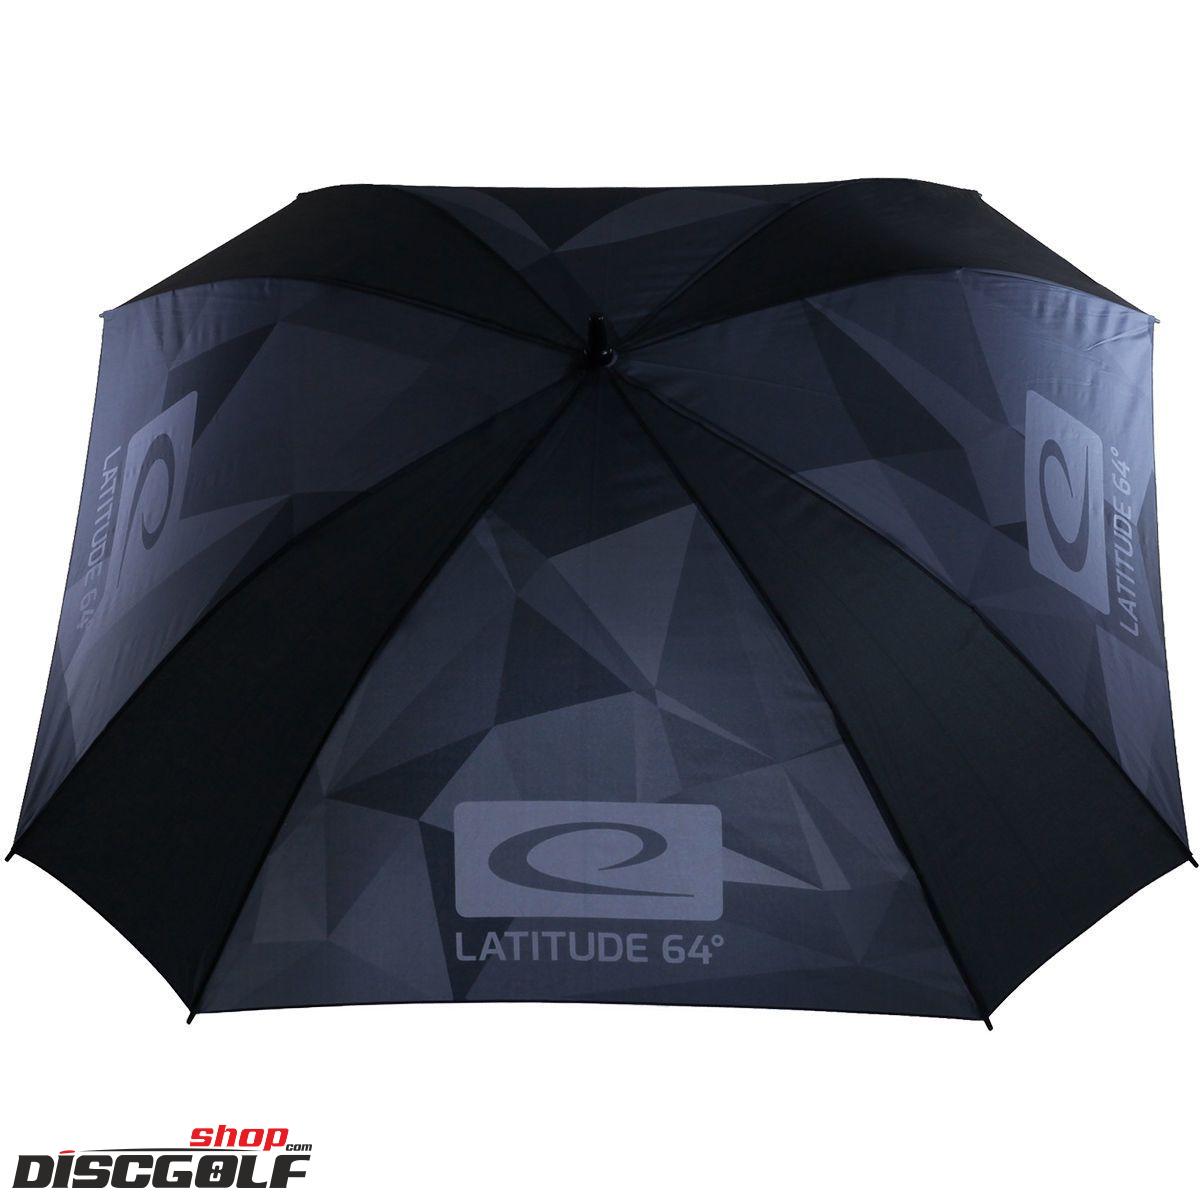 Latitude 64° Deštník Čtvercový Grey Camo (discgolf)